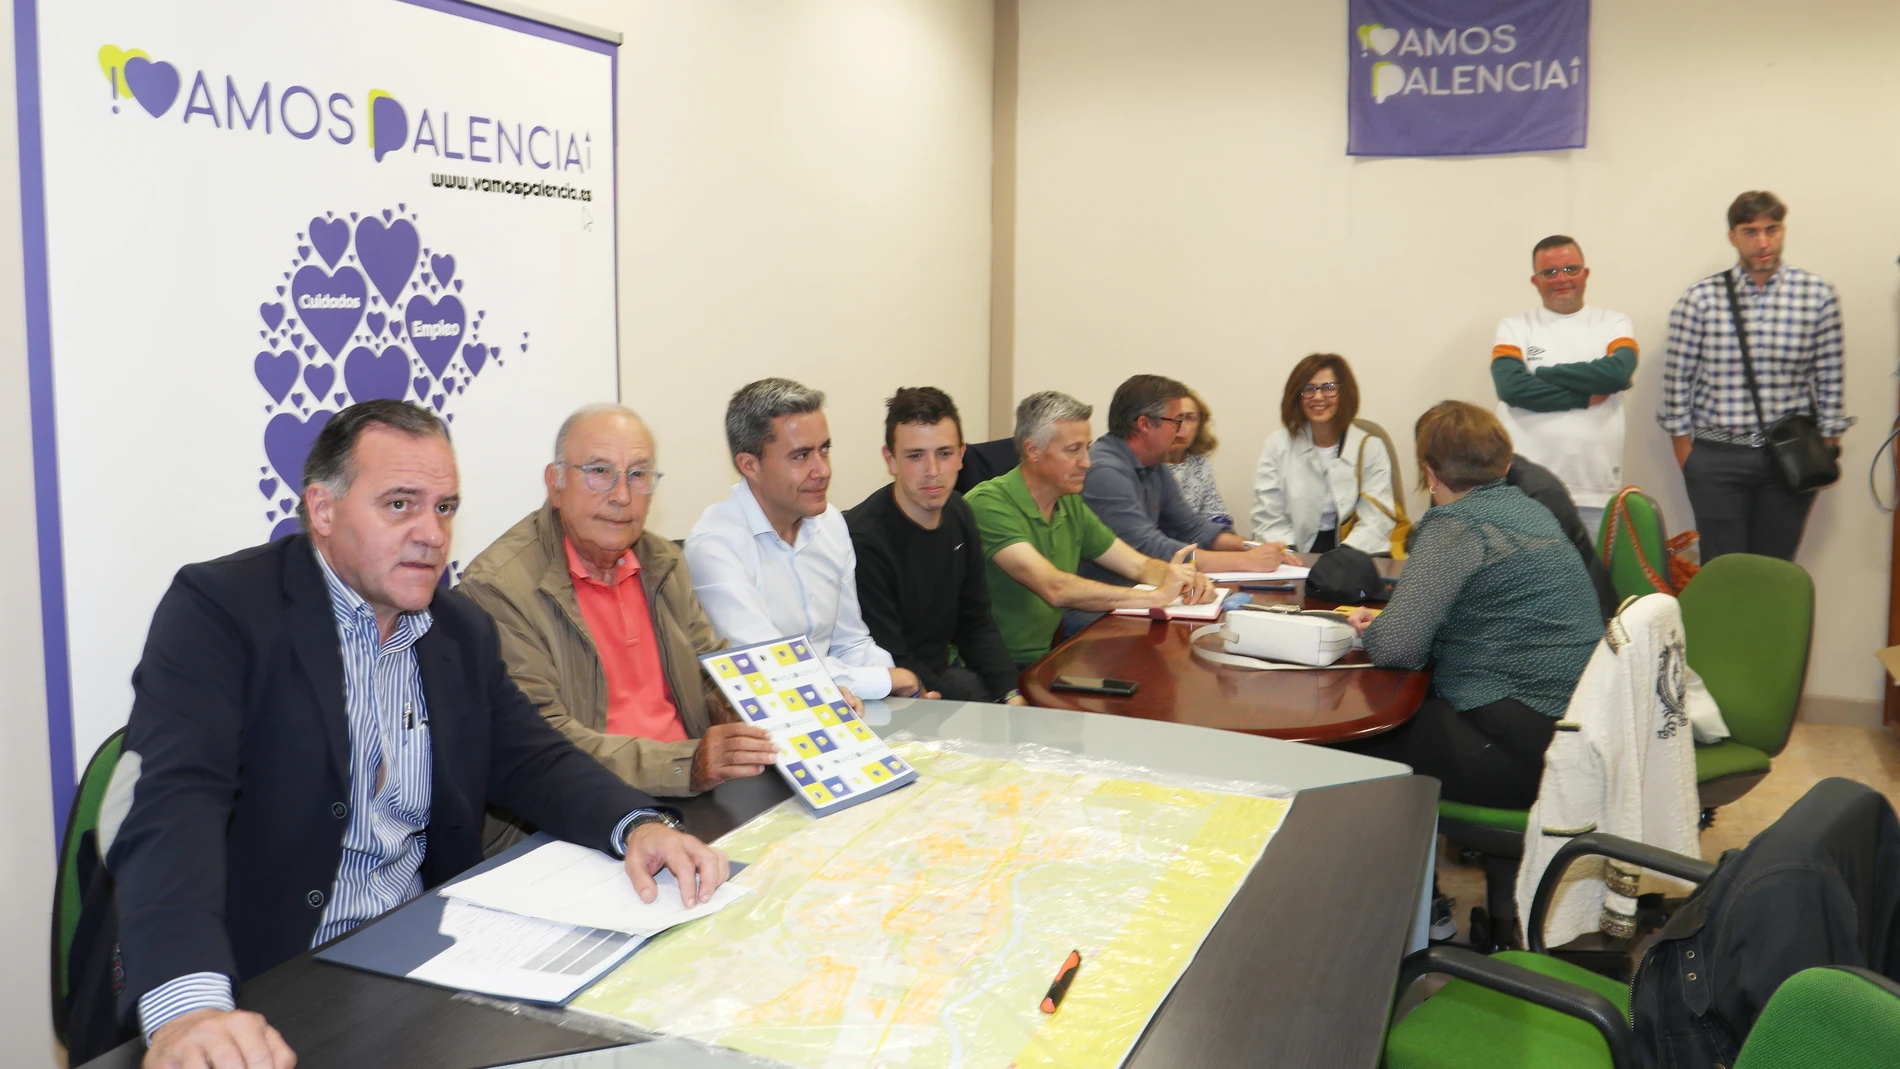 Reunión de la asamblea de Vamos Palencia para decidir un posible pacto electoral